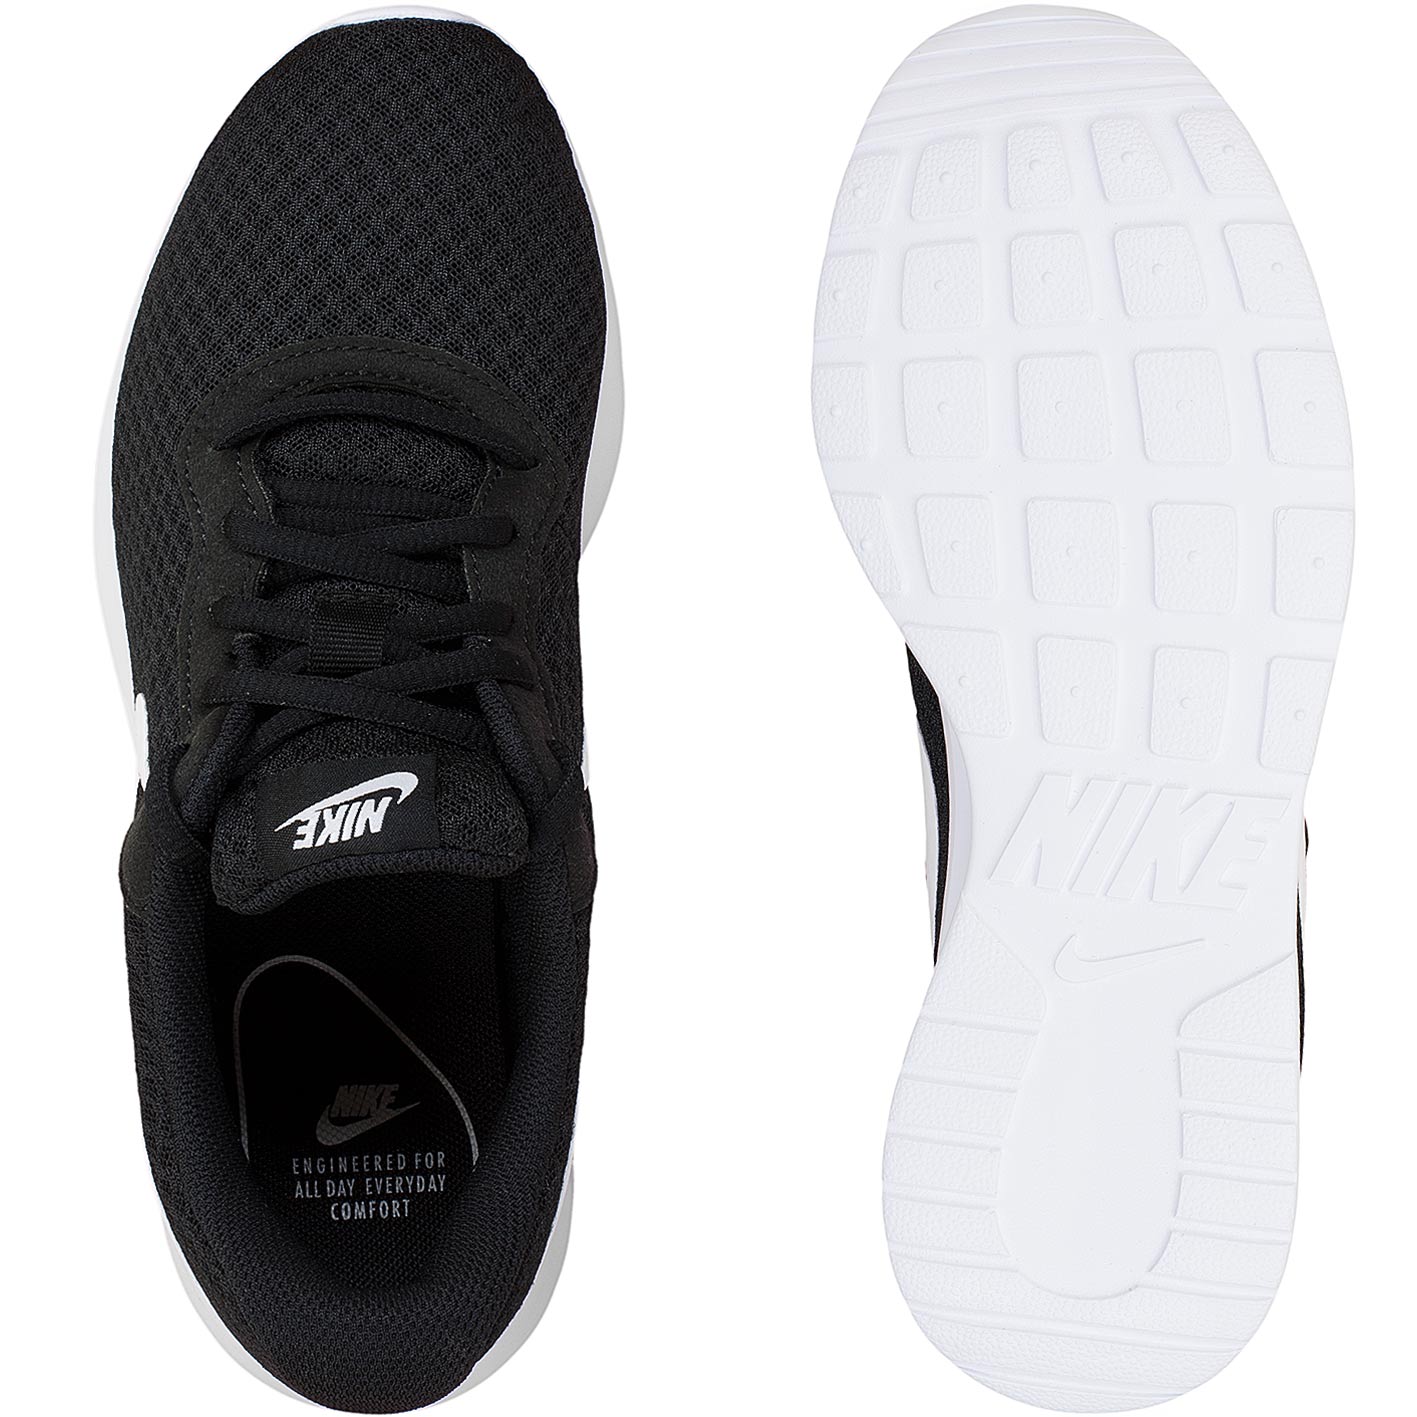 ☆ Nike Damen Sneaker Tanjun schwarz/weiß - hier bestellen!